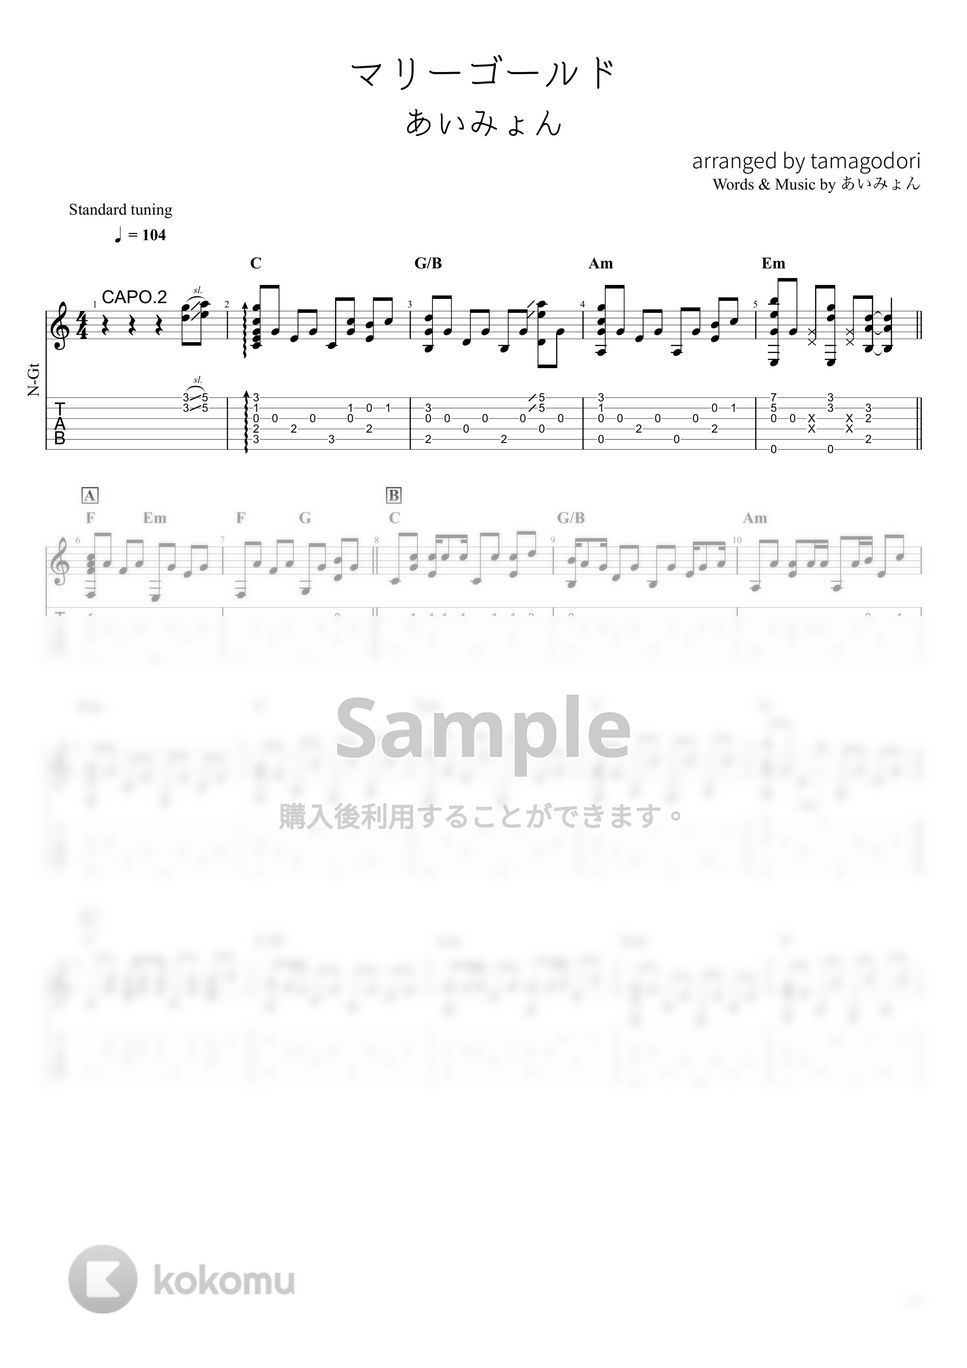 あいみょん - マリーゴールド (ソロギター) by たまごどり